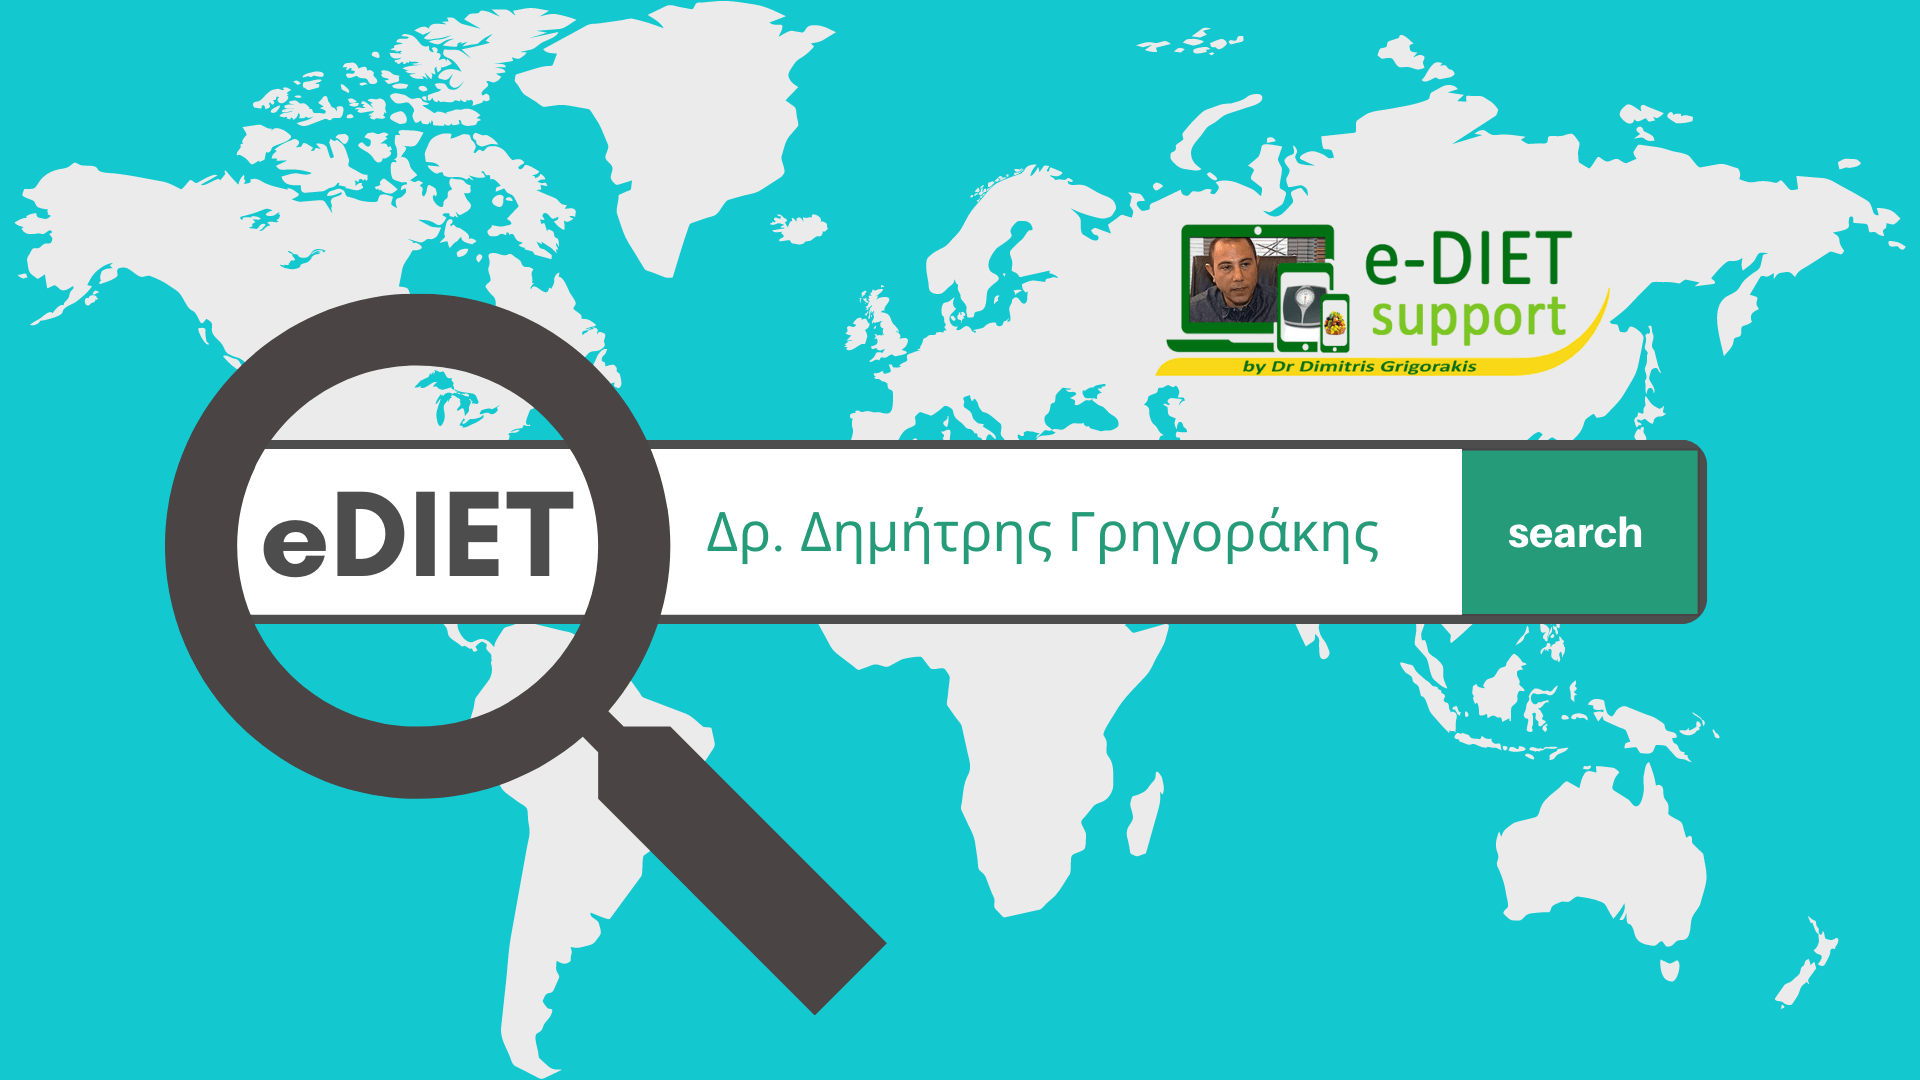 e-DIET Support by Dr. Dimitris Grigorakis - Κλείσε το Ραντεβού σου -